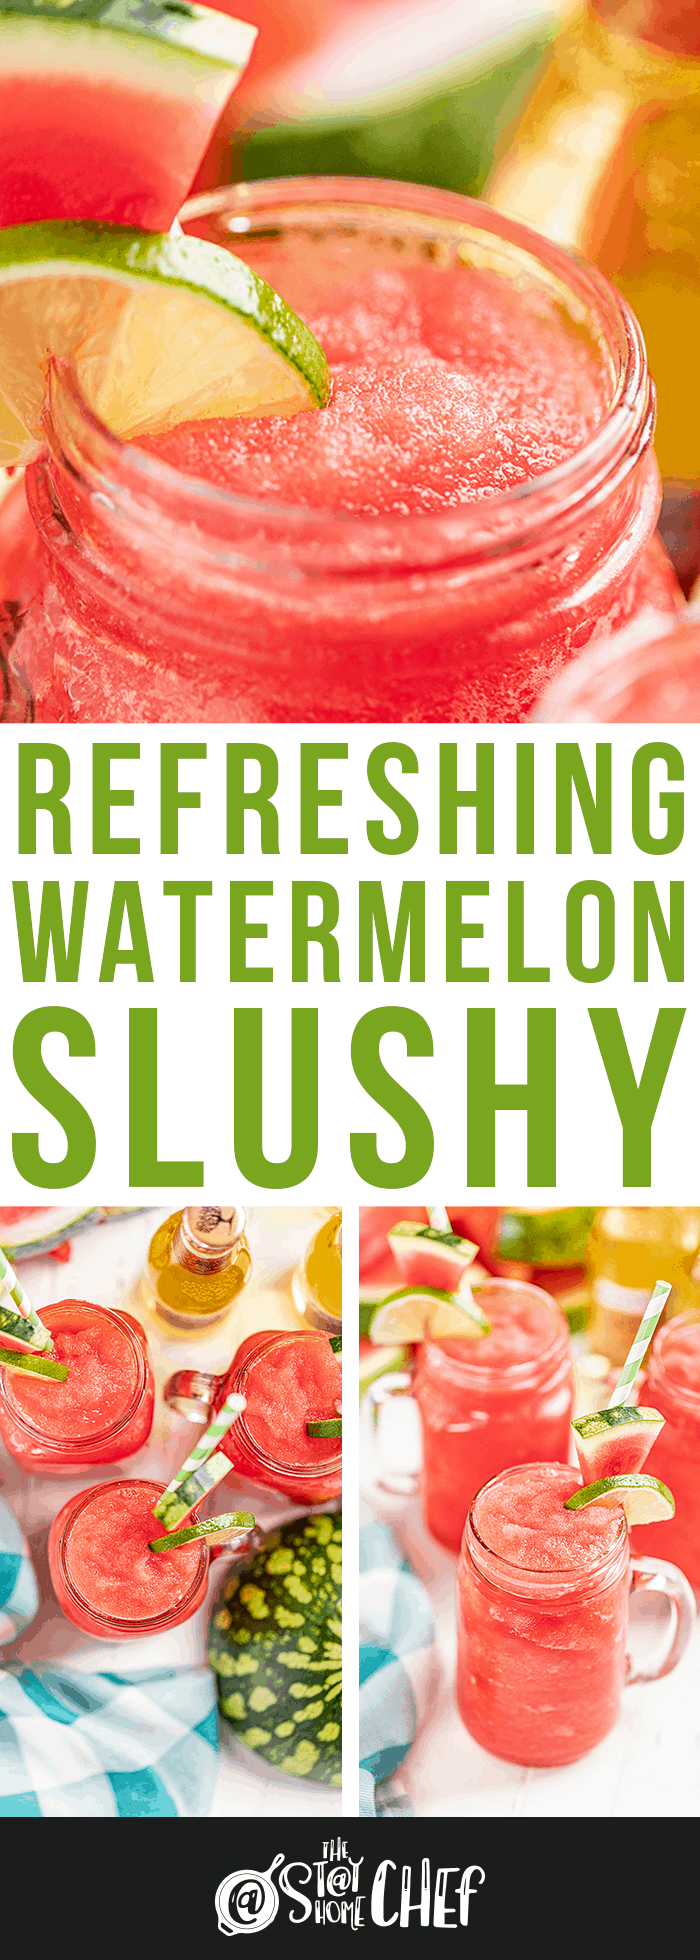 Watermelon Slushy